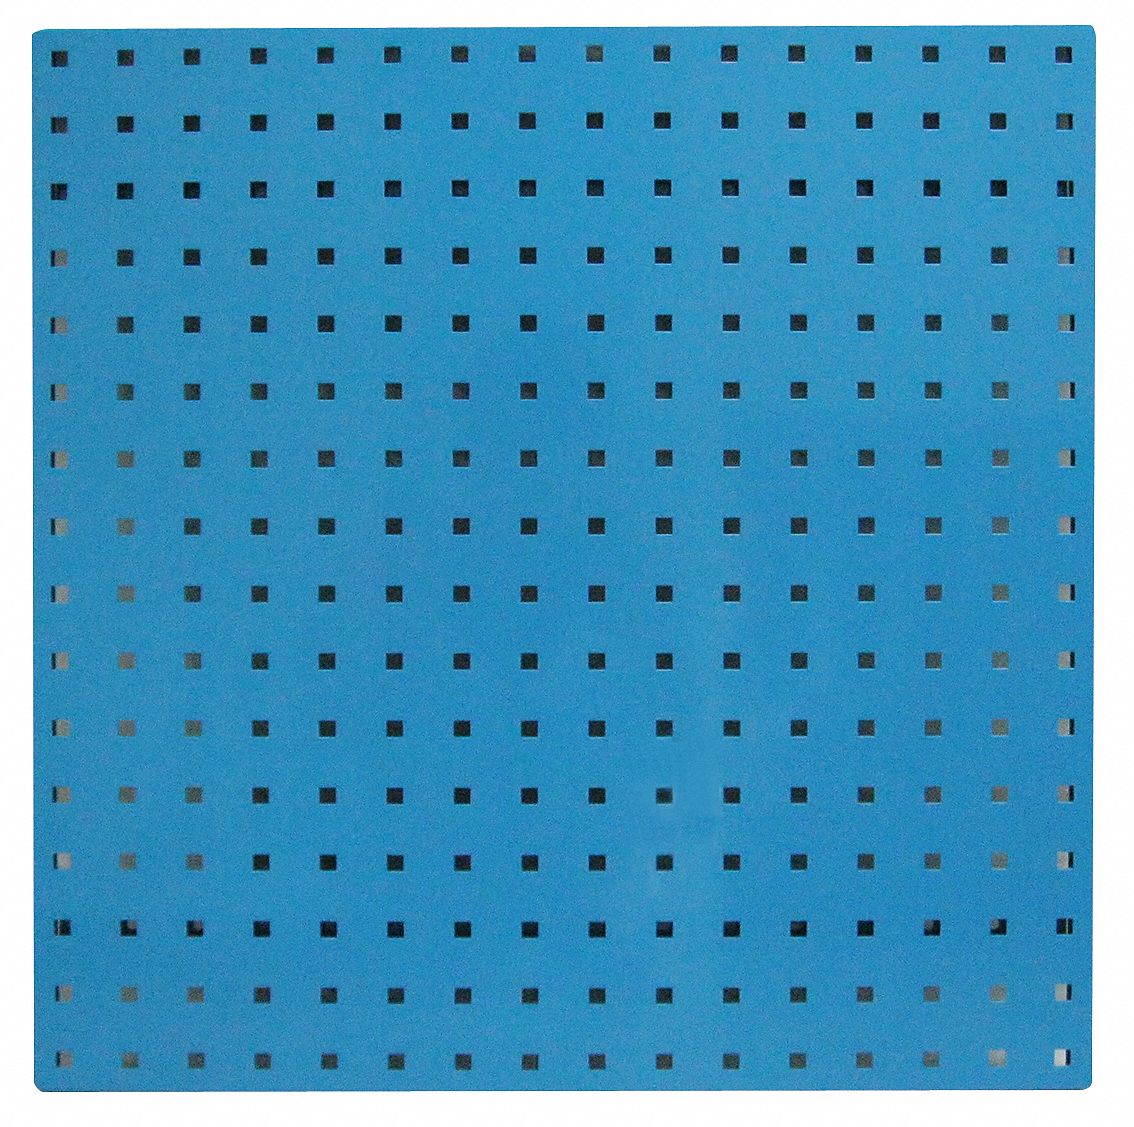 Compra Panel perforado tipo tablero perforado de madera - 96 cm - Azul al  por mayor